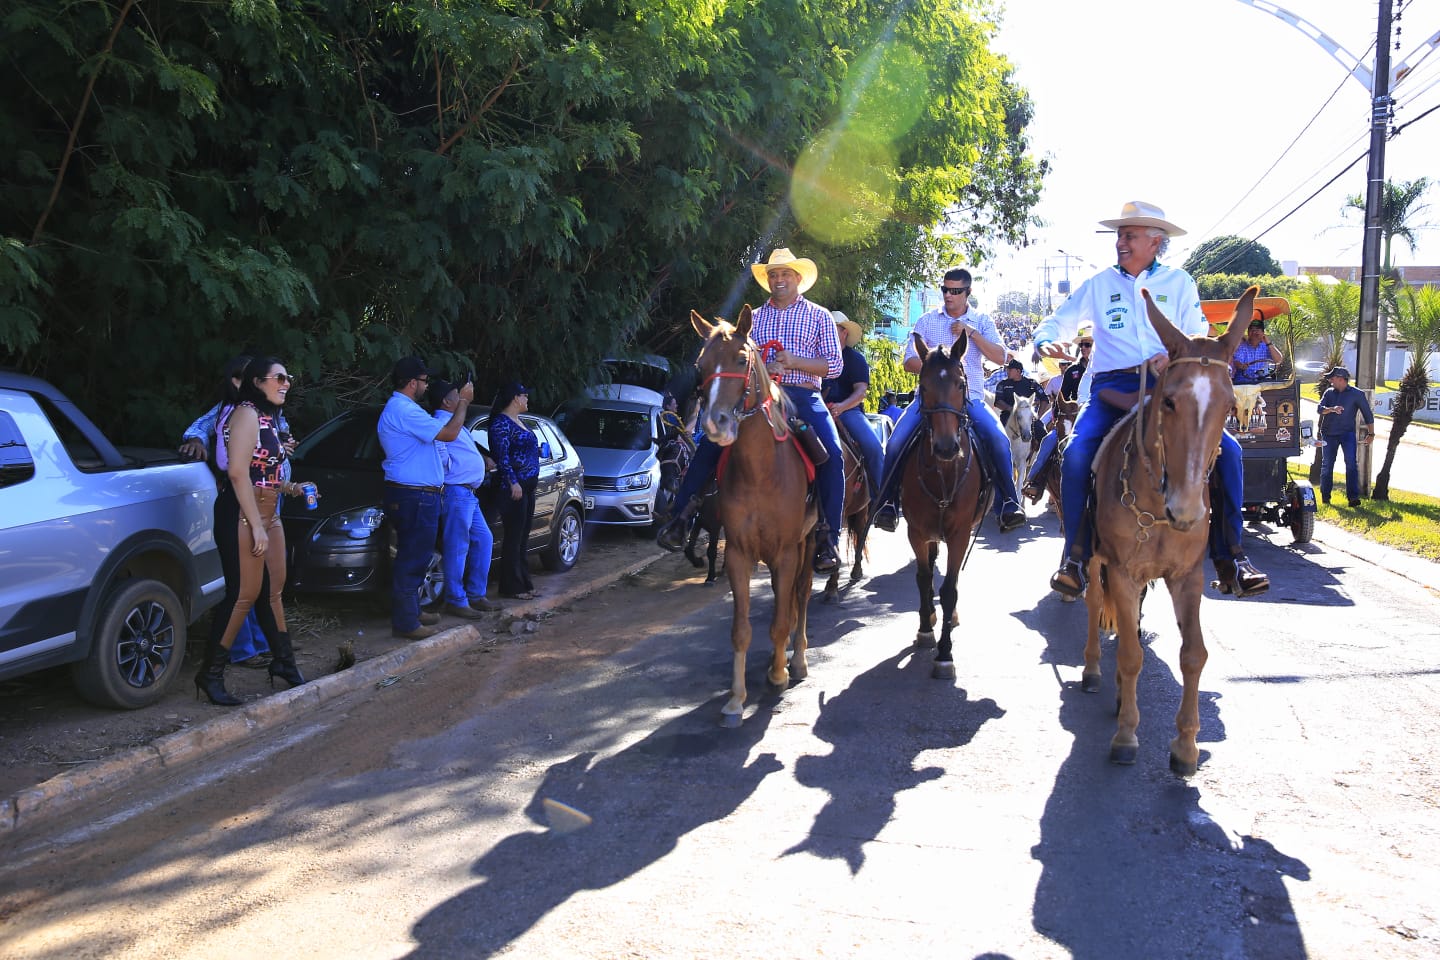 Governador Ronaldo Caiado participa do desfile de cavaleiros na Expo Agro São Luís e destaca importância da festa: "Foi um momento muito bonito"